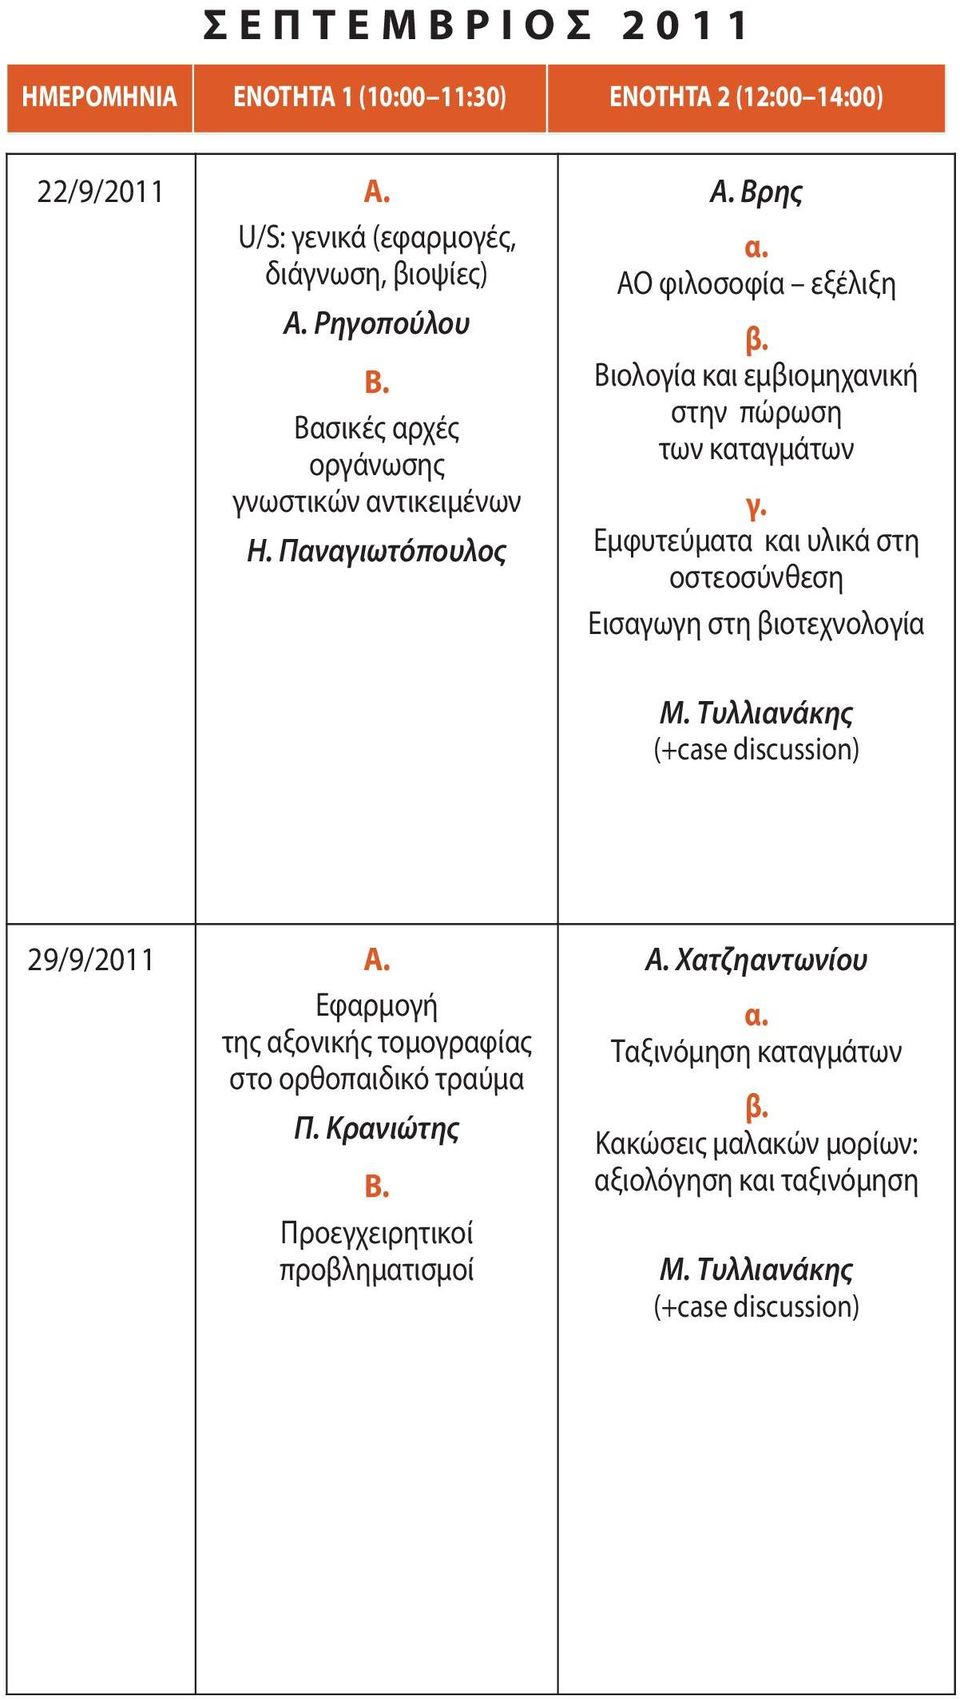 Εμφυτεύματα και υλικά στη οστεοσύνθεση Eισαγωγη στη βιοτεχνολογία M. Τυλλιανάκης 29/9/2011 A.